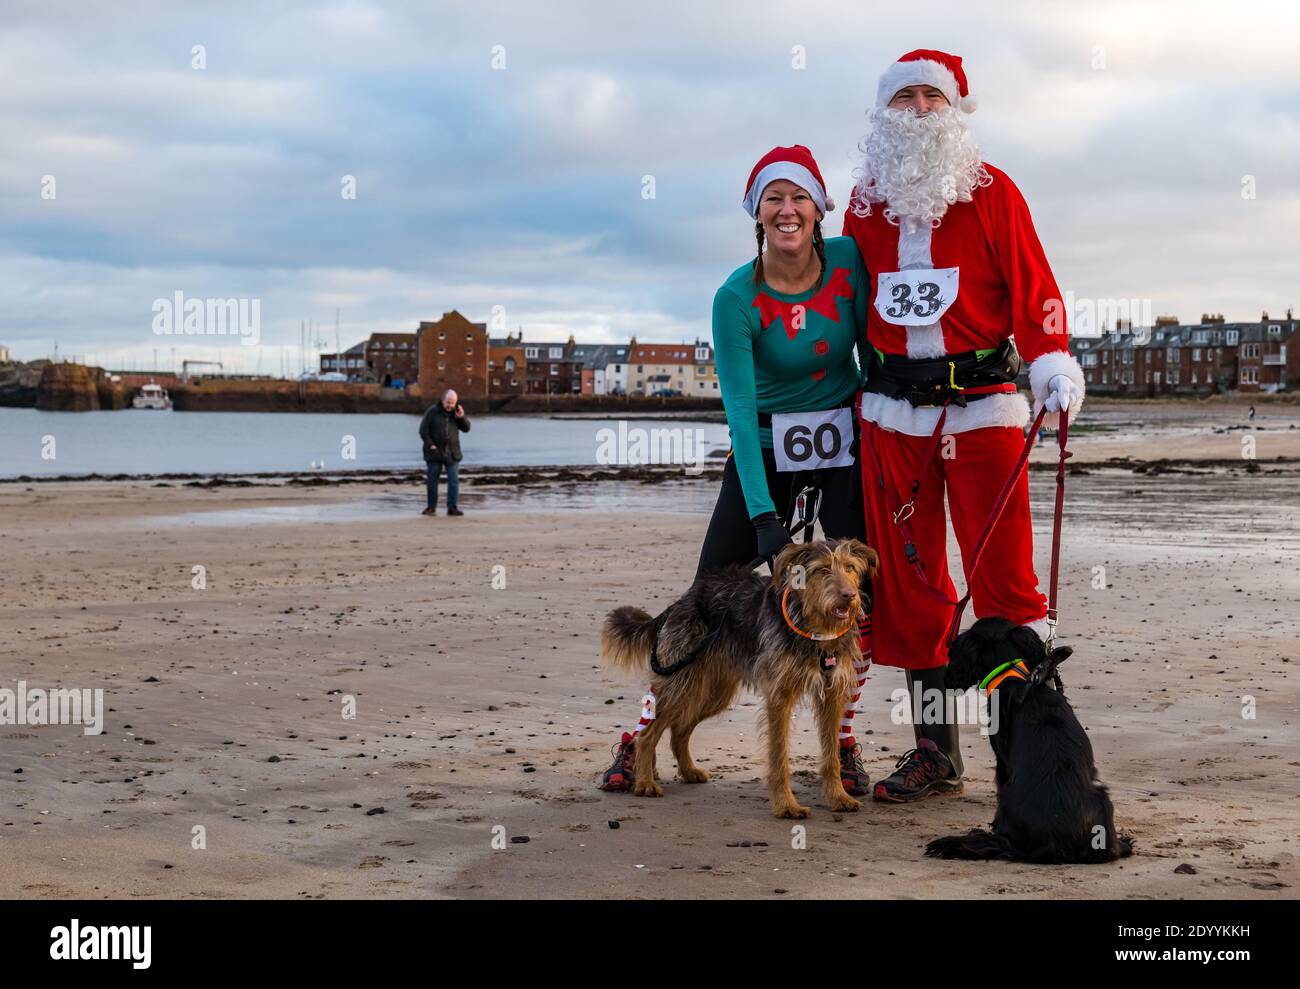 Couple en Santa et costumes de Noël avec des chiens dans une course de charité sur la plage, North Berwick, East Lothian, Écosse, Royaume-Uni Banque D'Images